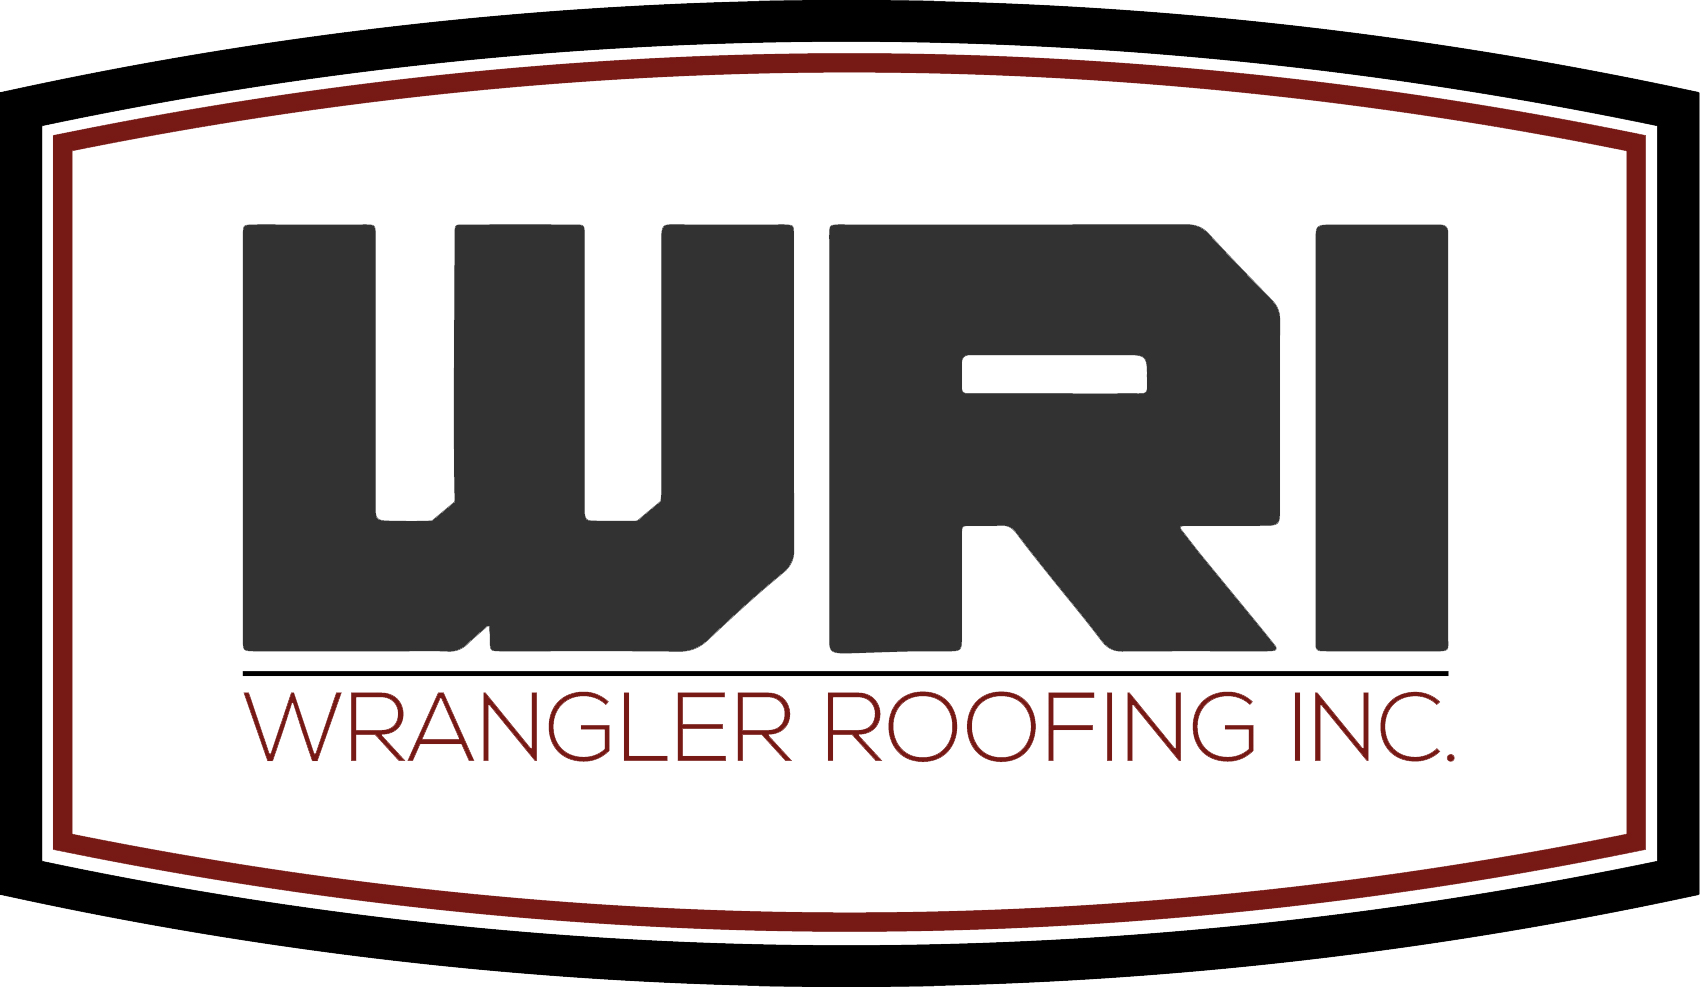 Wrangler Roofing